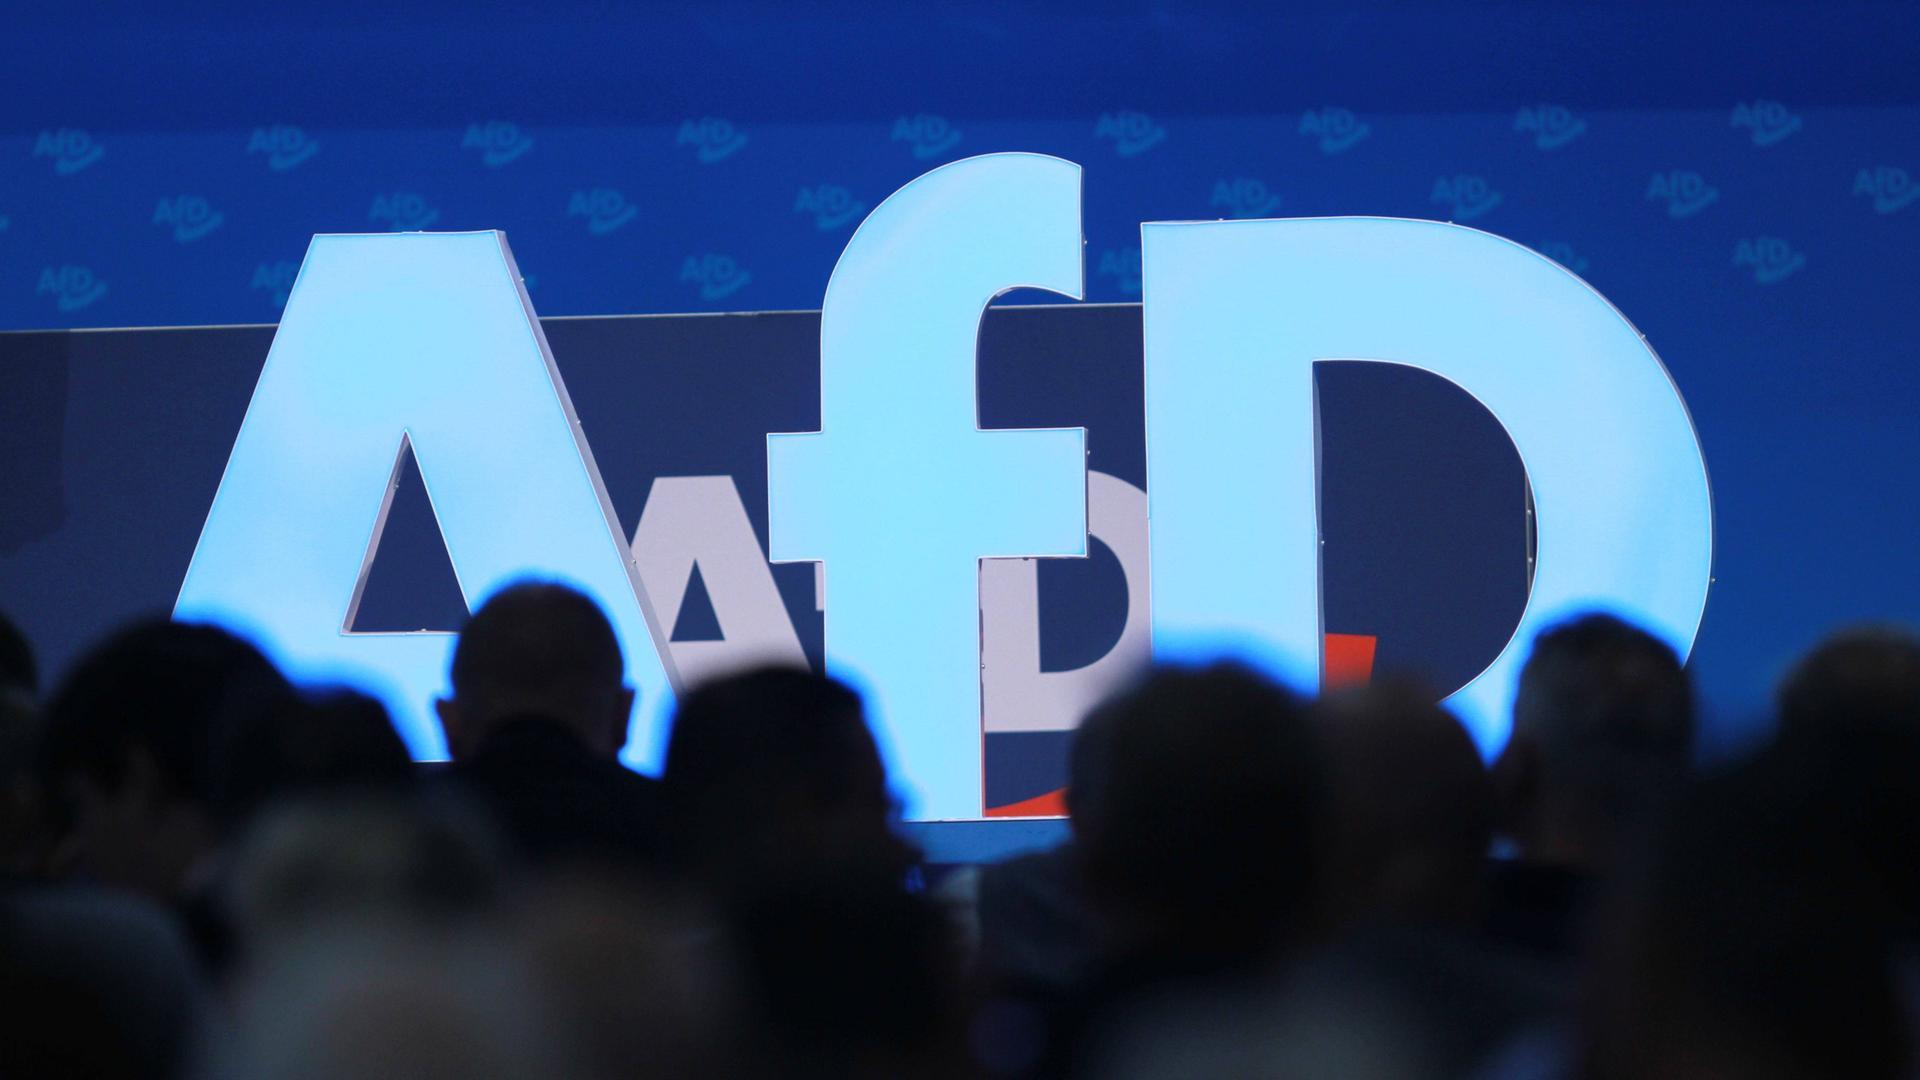 Auf der Bühne steht beim AfD-Bundesparteitag steht in Hellblau das Logo der Partei.
